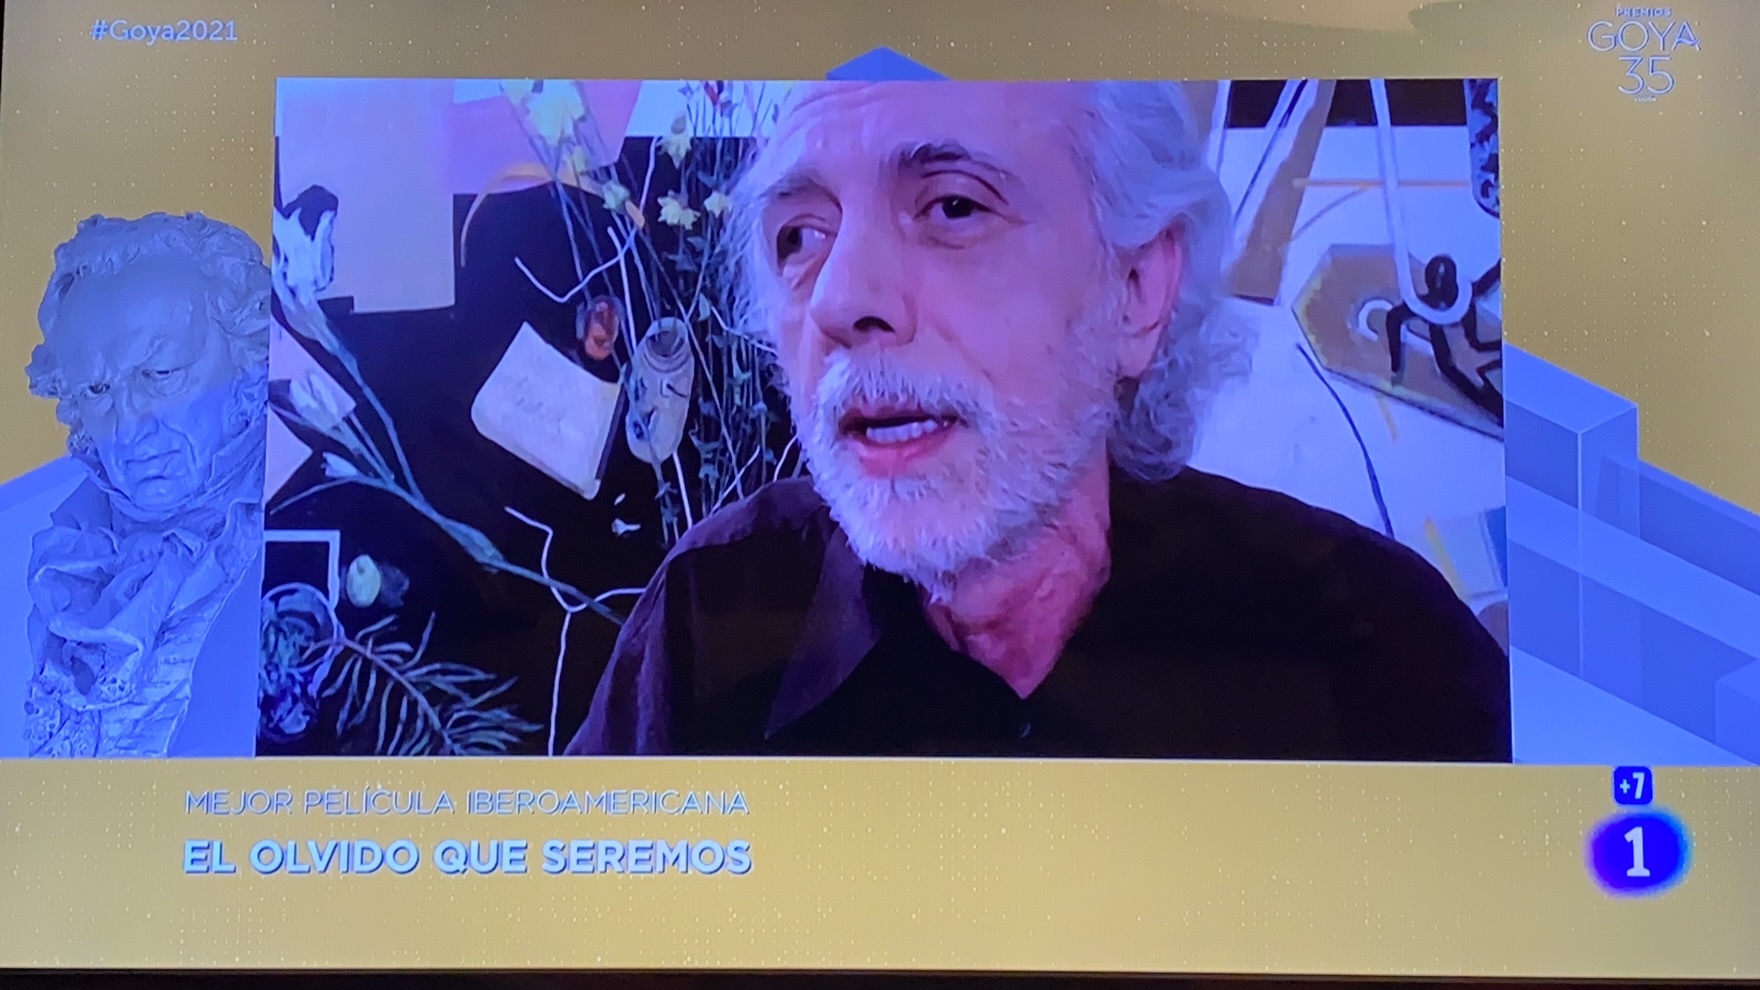 El olvido que seremos gana premio Goya a mejor película iberoamericana